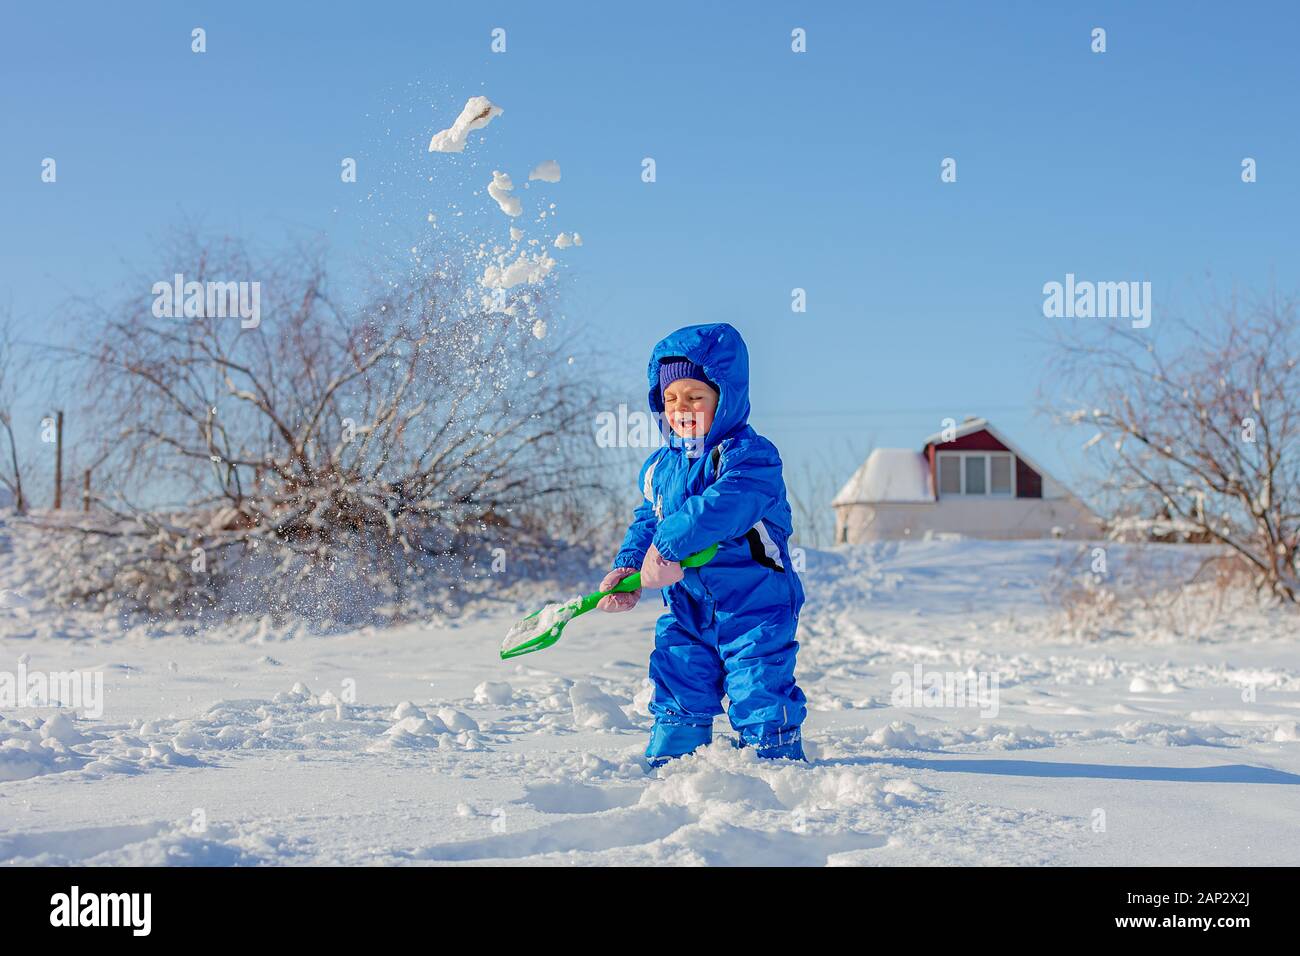 Niñito dig y jugar en el invierno, nieve, actividades de invierno para niños. Niño excava una pala de nieve. Niño con sus manos en posee una espada roja. Holi de